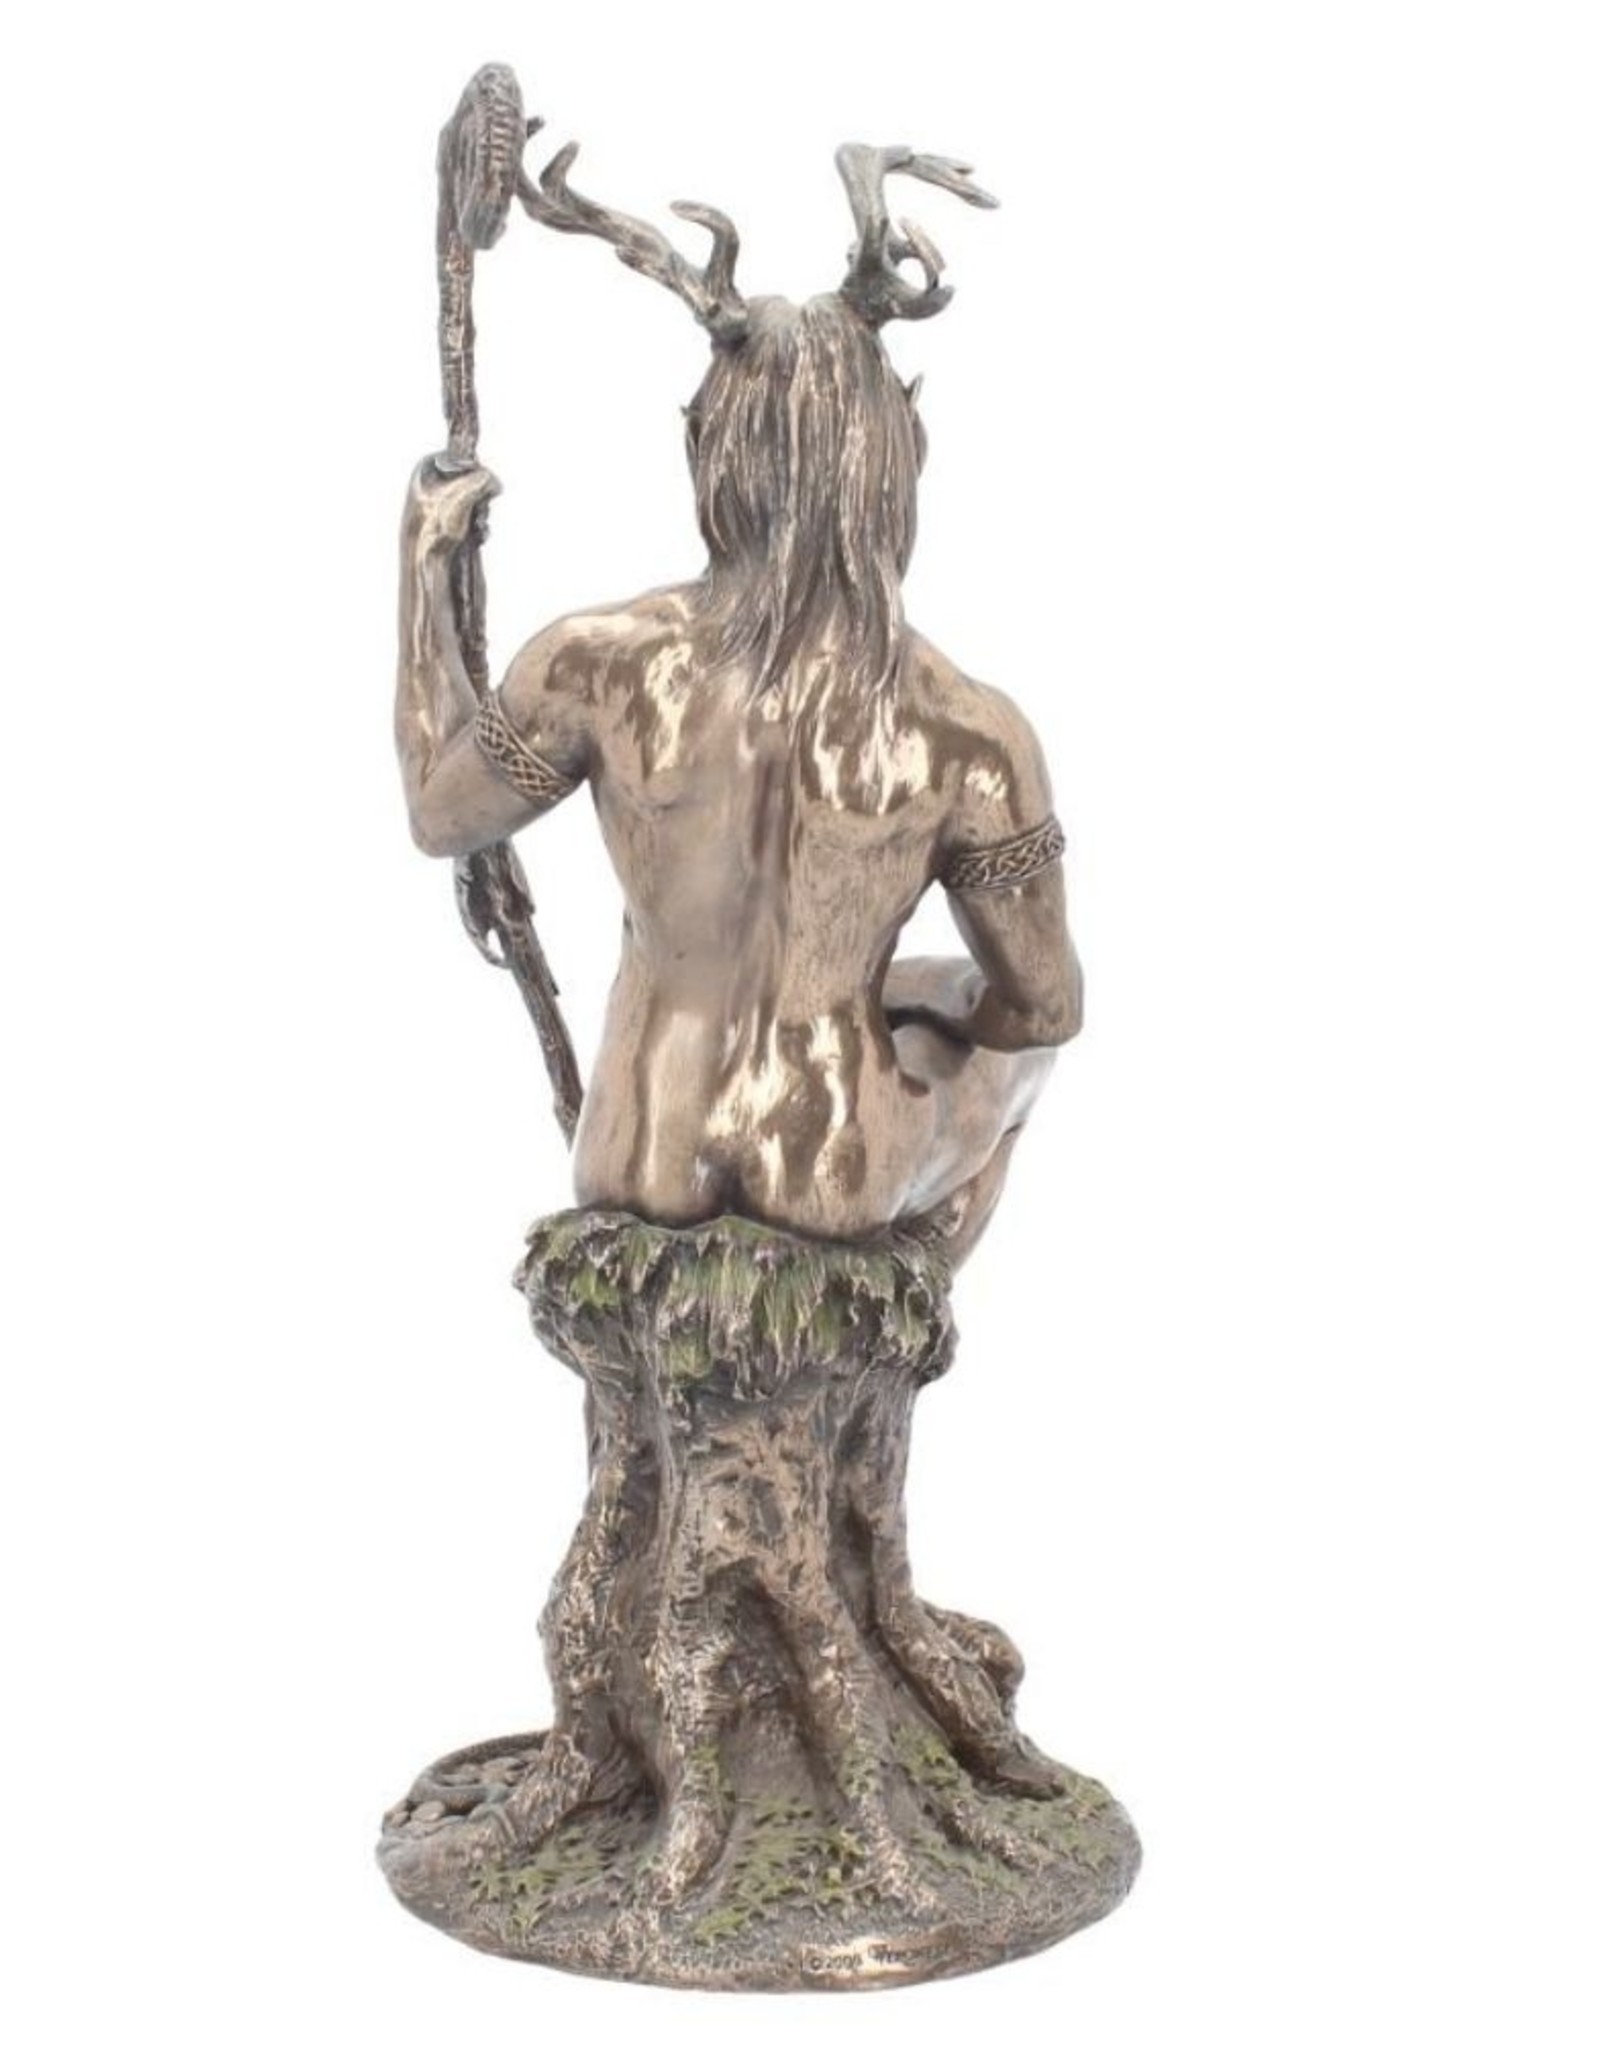 Veronese Design Giftware & Lifestyle - Herne The Hunter of Windsor Forrest Bronzed Figurine 27.5cm